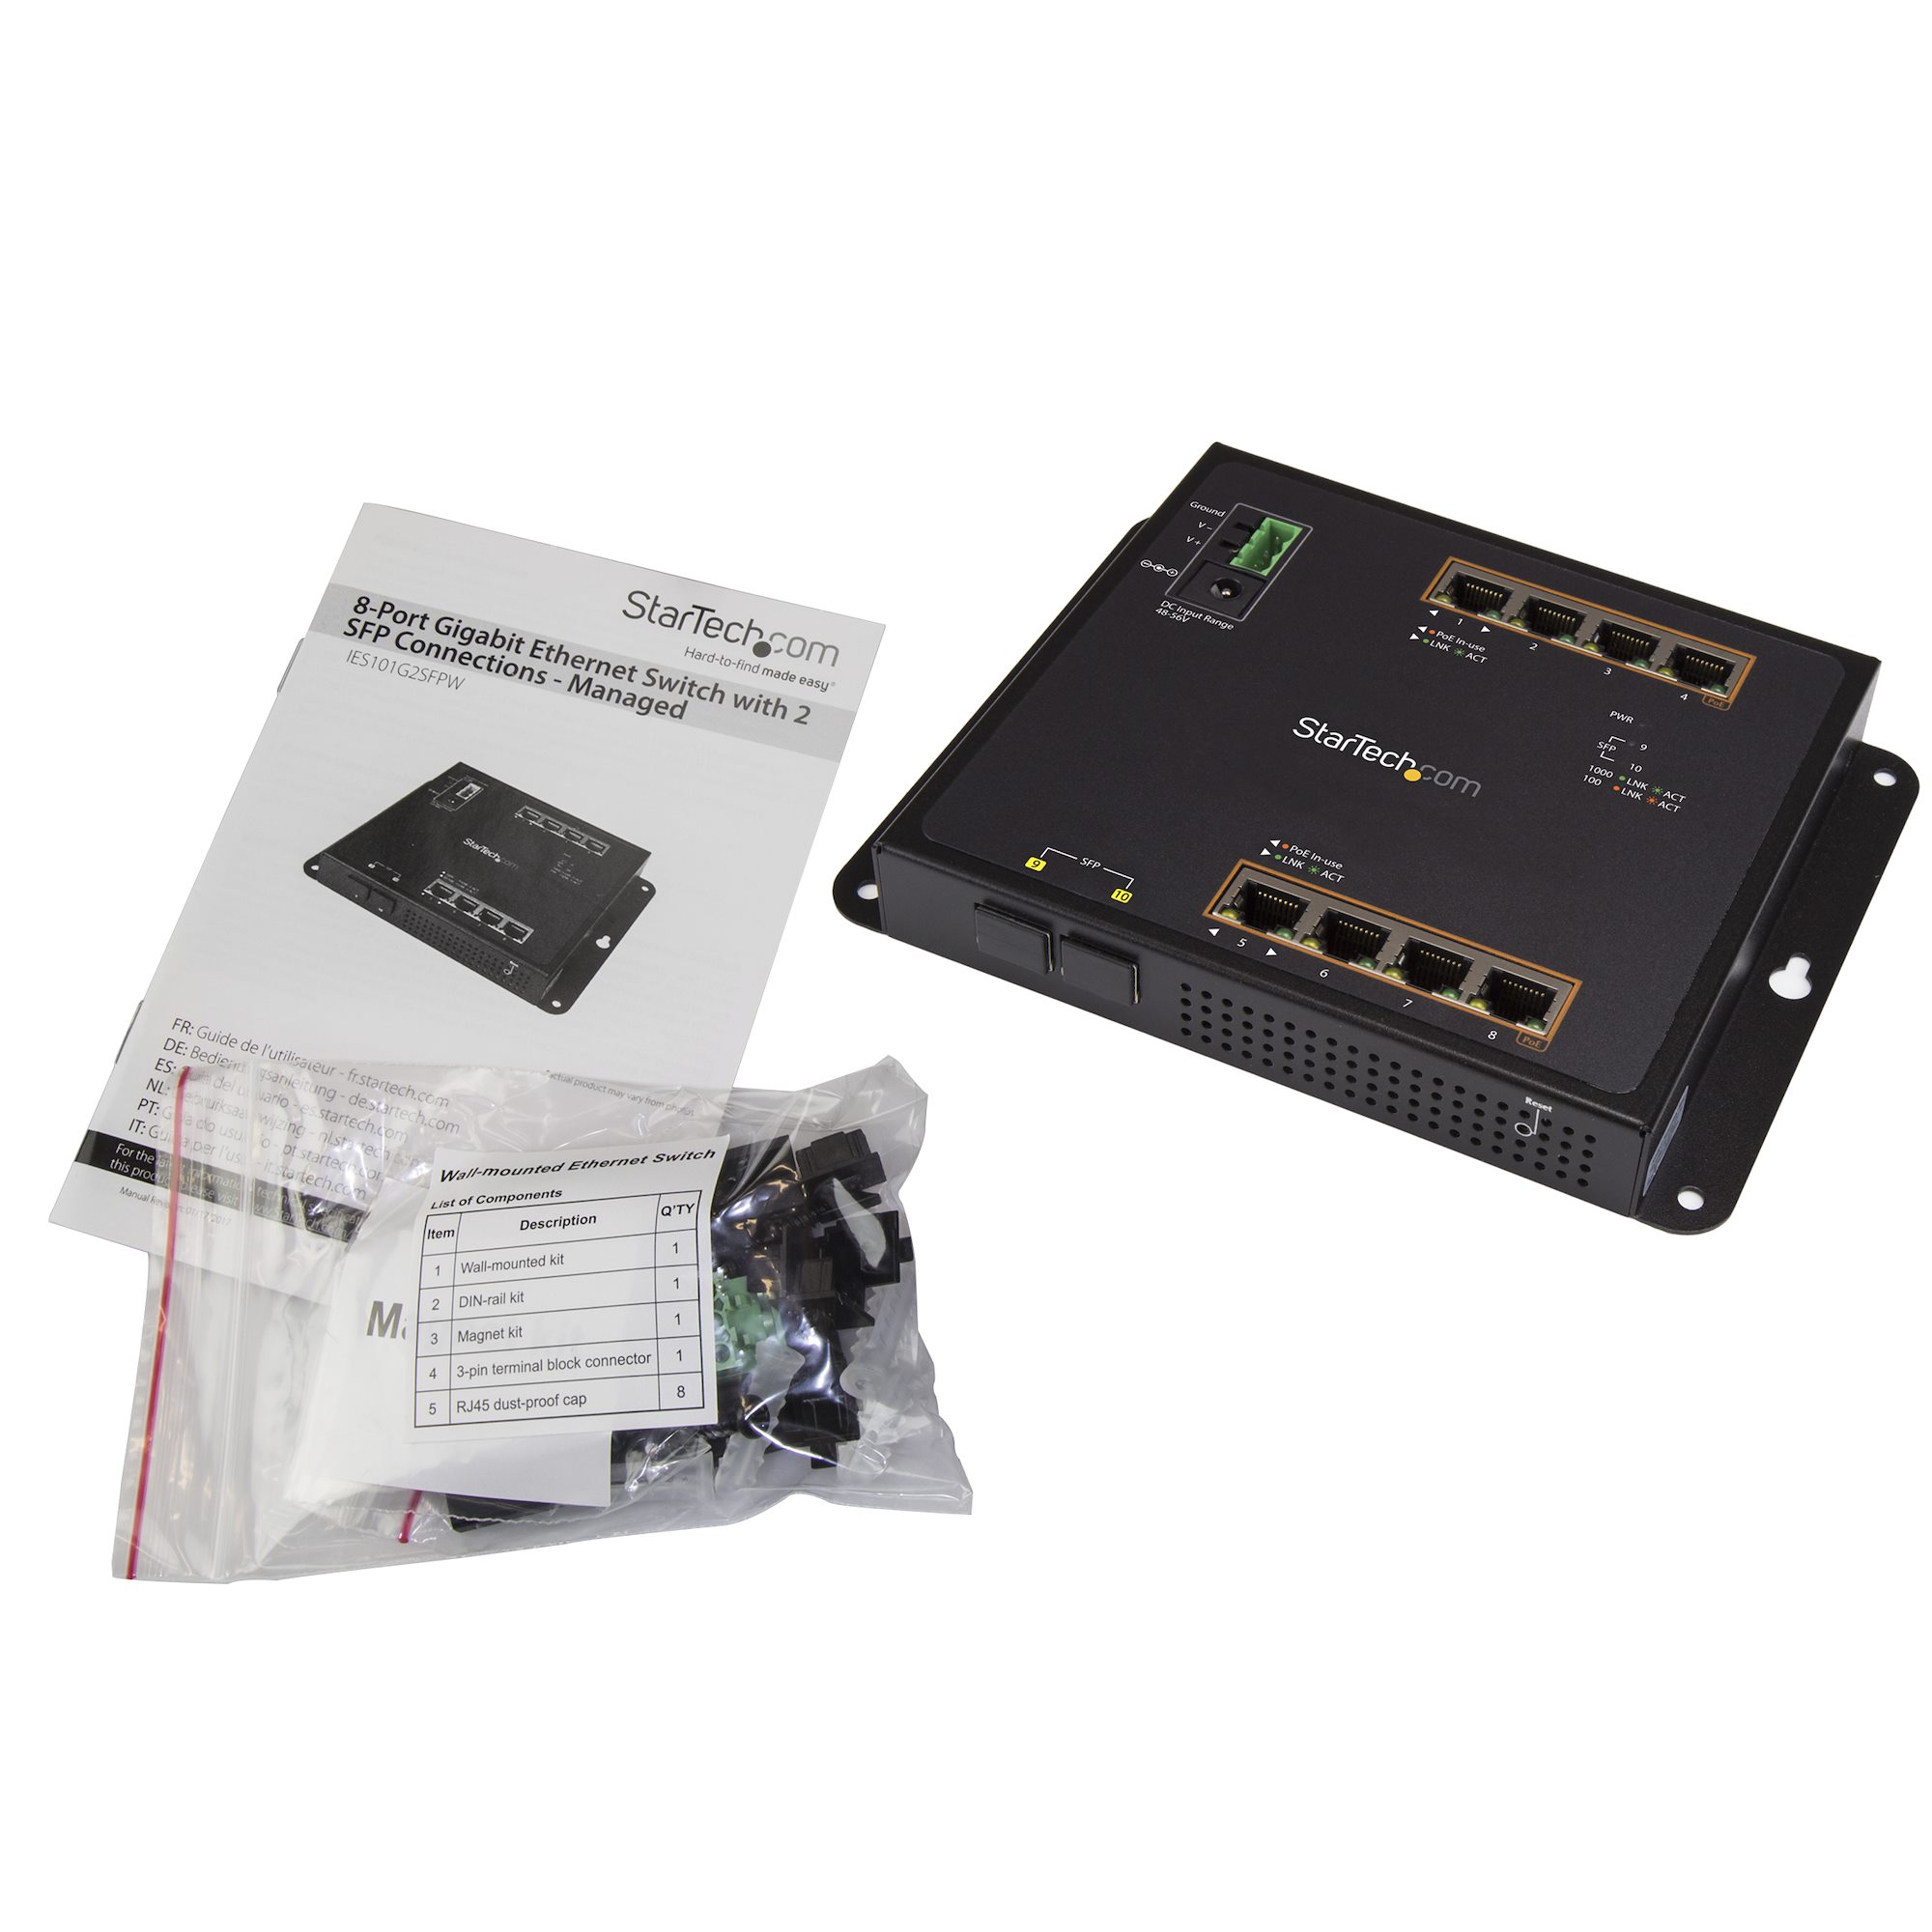 Switch Industriel Gigabit Ethernet 8 Ports - 2 Slots SFP MSA - Switch  Administrable GbE L2 Renforcé - Répartiteur Layer 2 RJ45 Robuste - Fixation